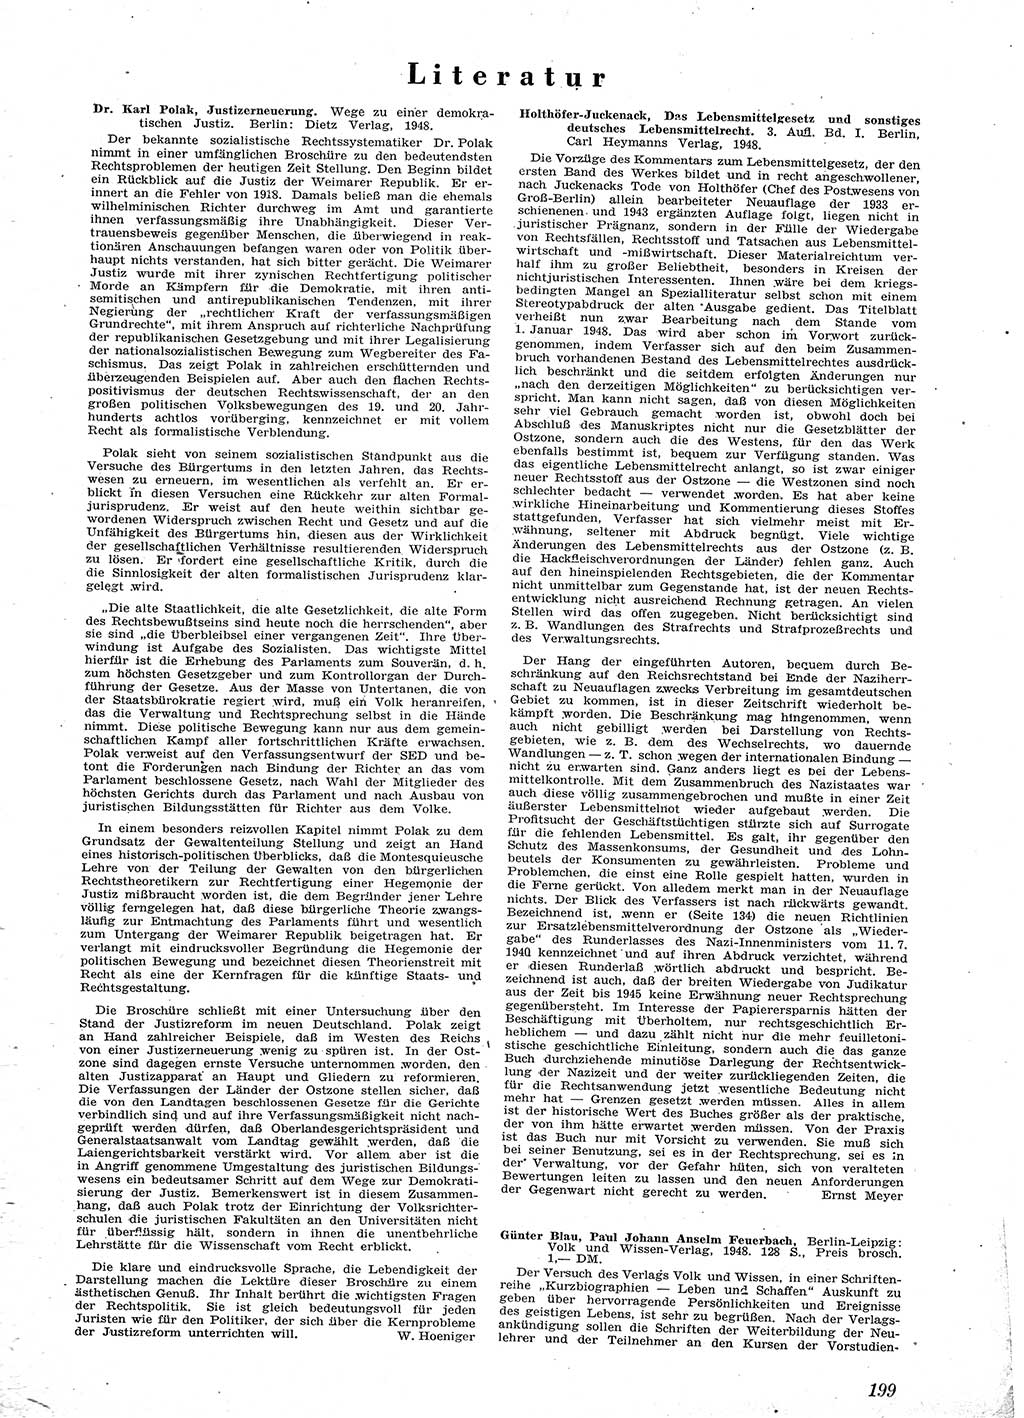 Neue Justiz (NJ), Zeitschrift für Recht und Rechtswissenschaft [Sowjetische Besatzungszone (SBZ) Deutschland], 2. Jahrgang 1948, Seite 199 (NJ SBZ Dtl. 1948, S. 199)